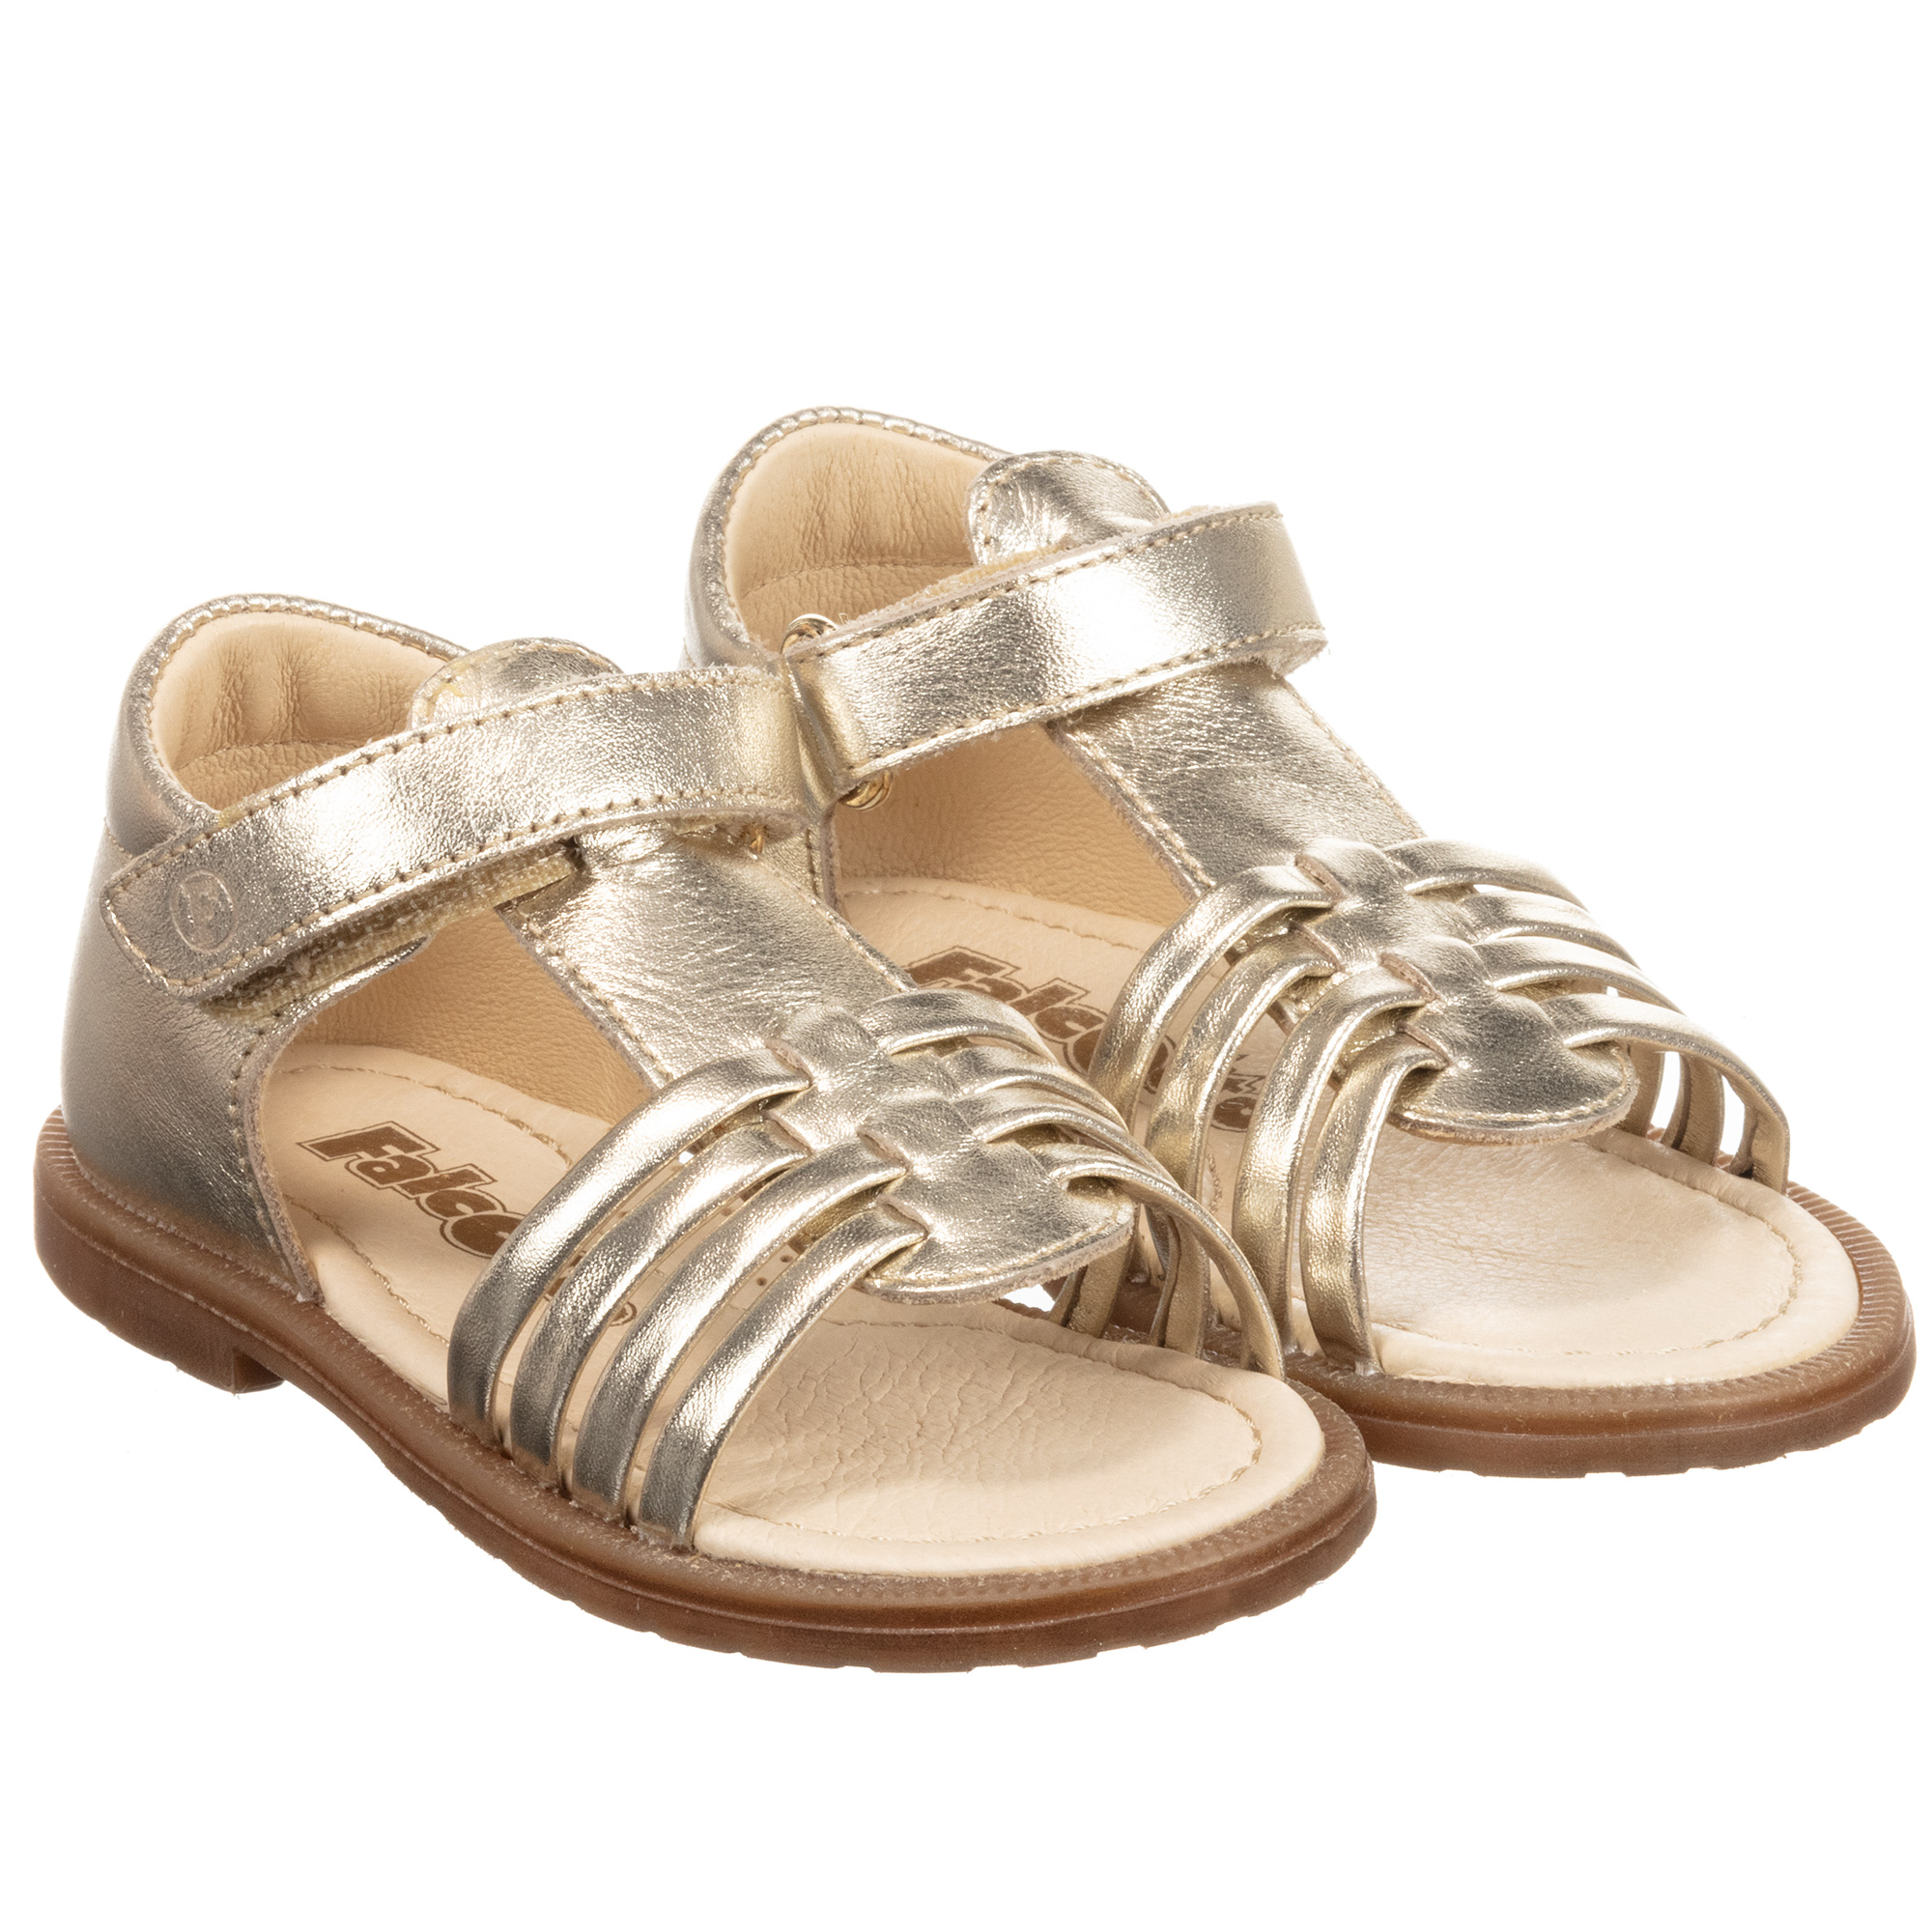 Toddler Girl Gold Sandals Size 6 - Little Girl Easter Summer Dress Shoes  Lightweight Open Toe Beach Holiday - Walmart.com